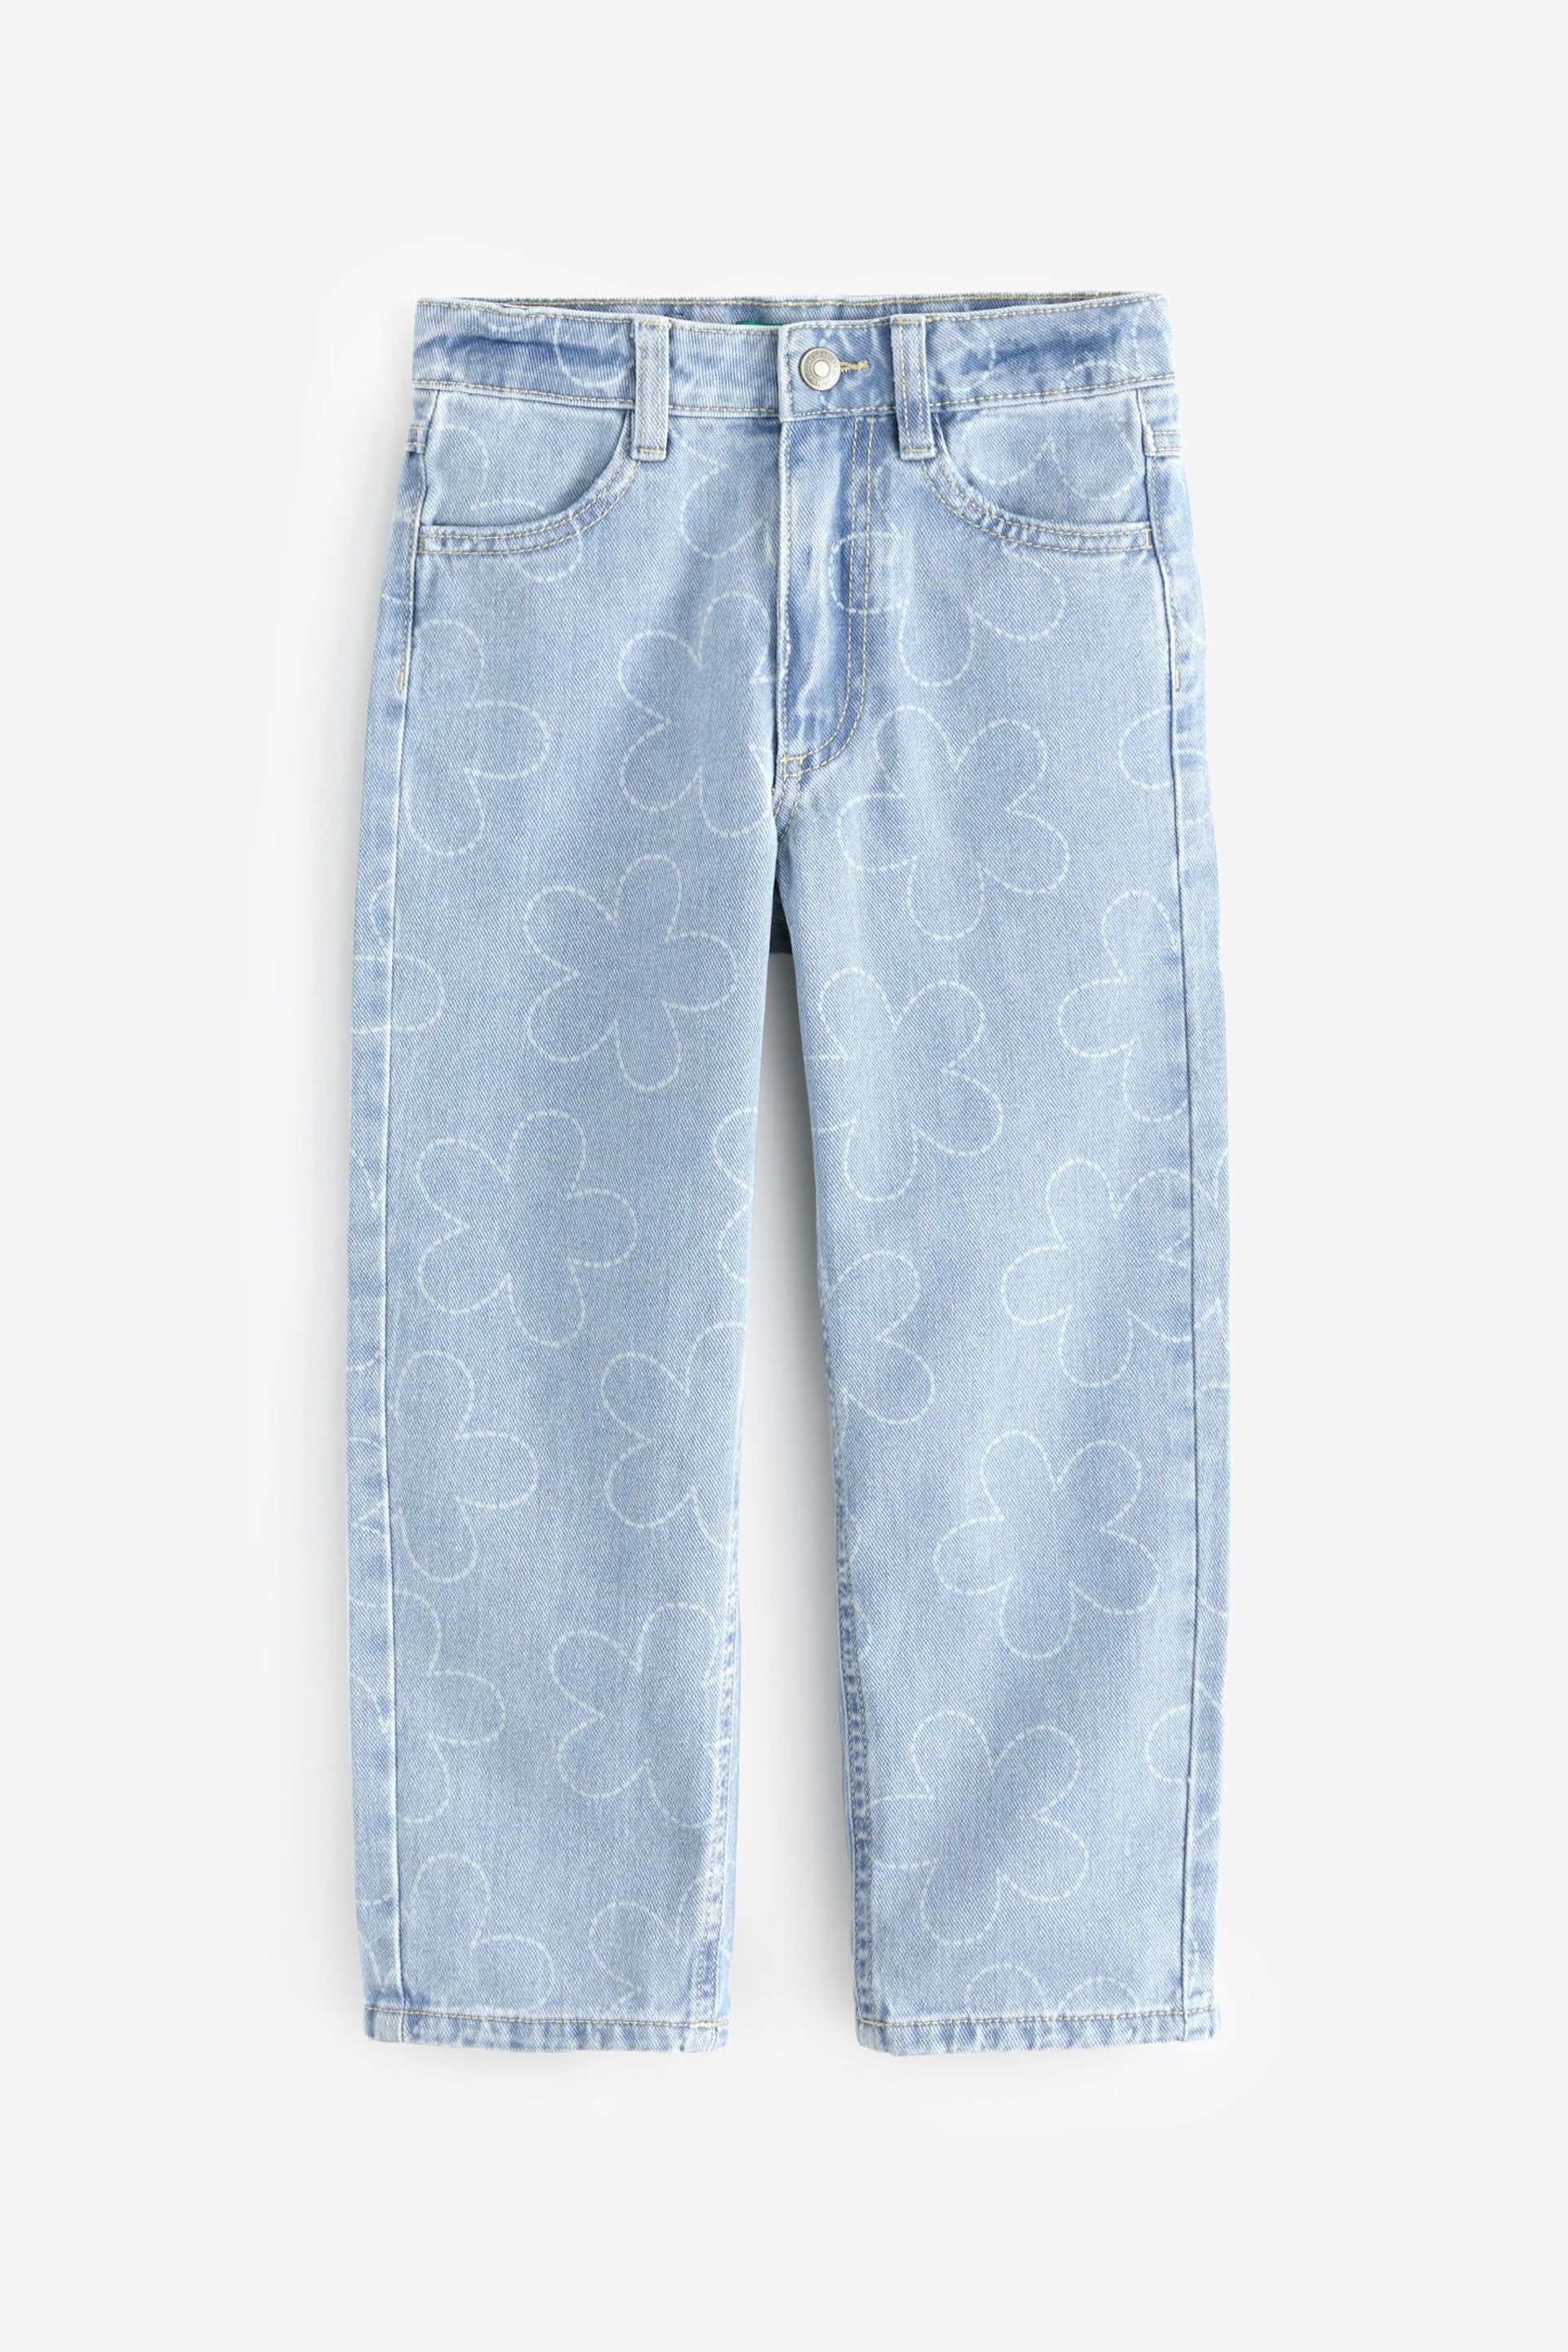 Benetton Girls Light Blue Denim Jeans - Image 1 of 4